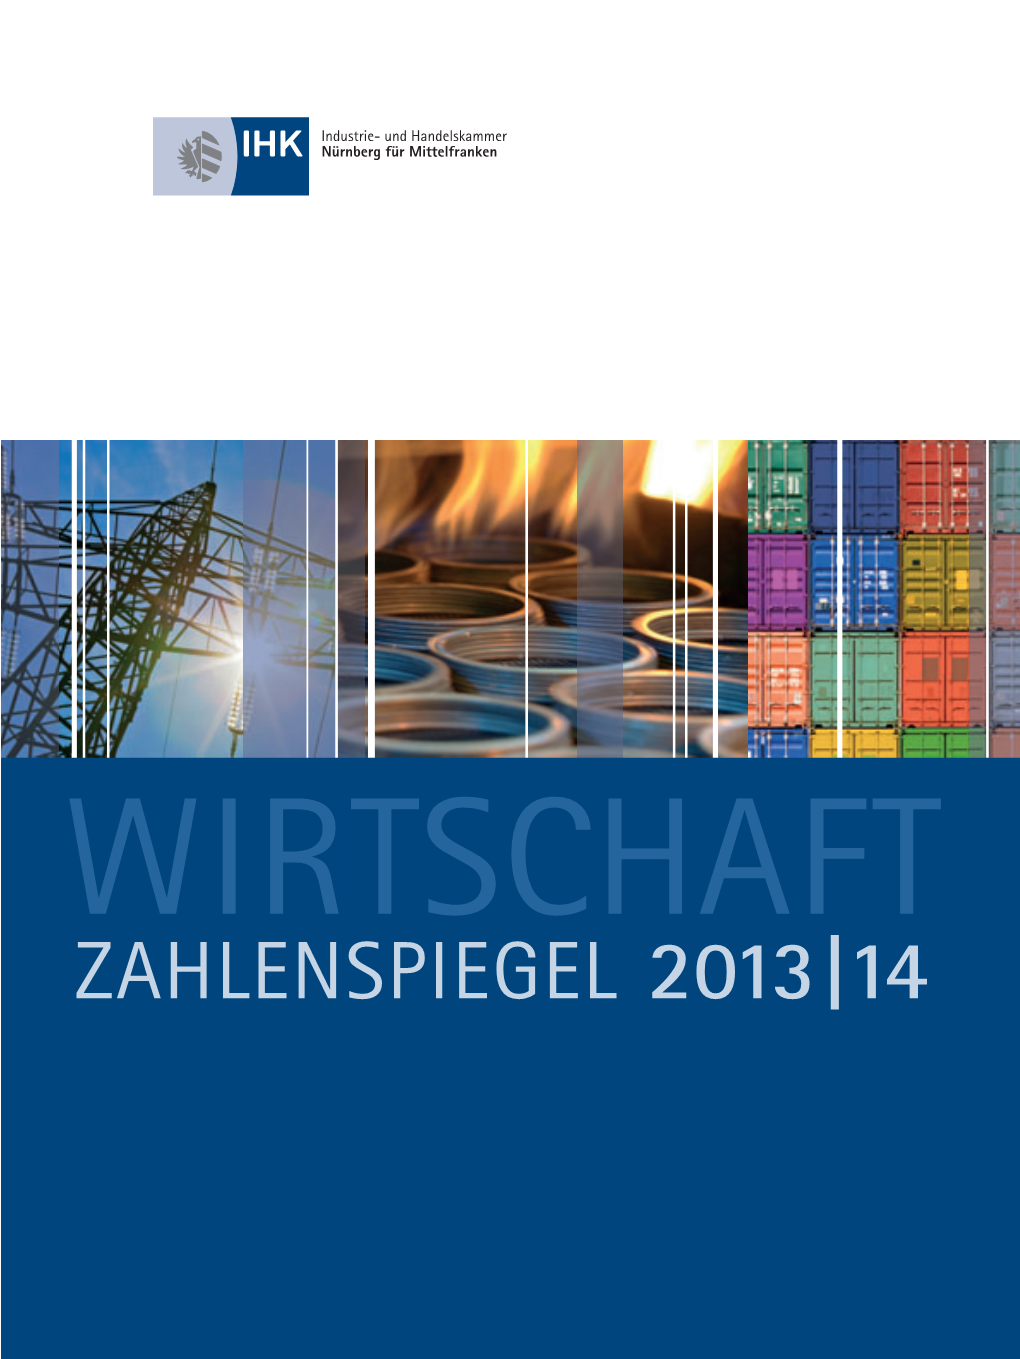 ZAHLENSPIEGEL 2013 | 14 2 Zahlenspiegel Wirtschaft Strukturdaten Von Industrie, Handel Und Dienstleistungen in Mittelfranken